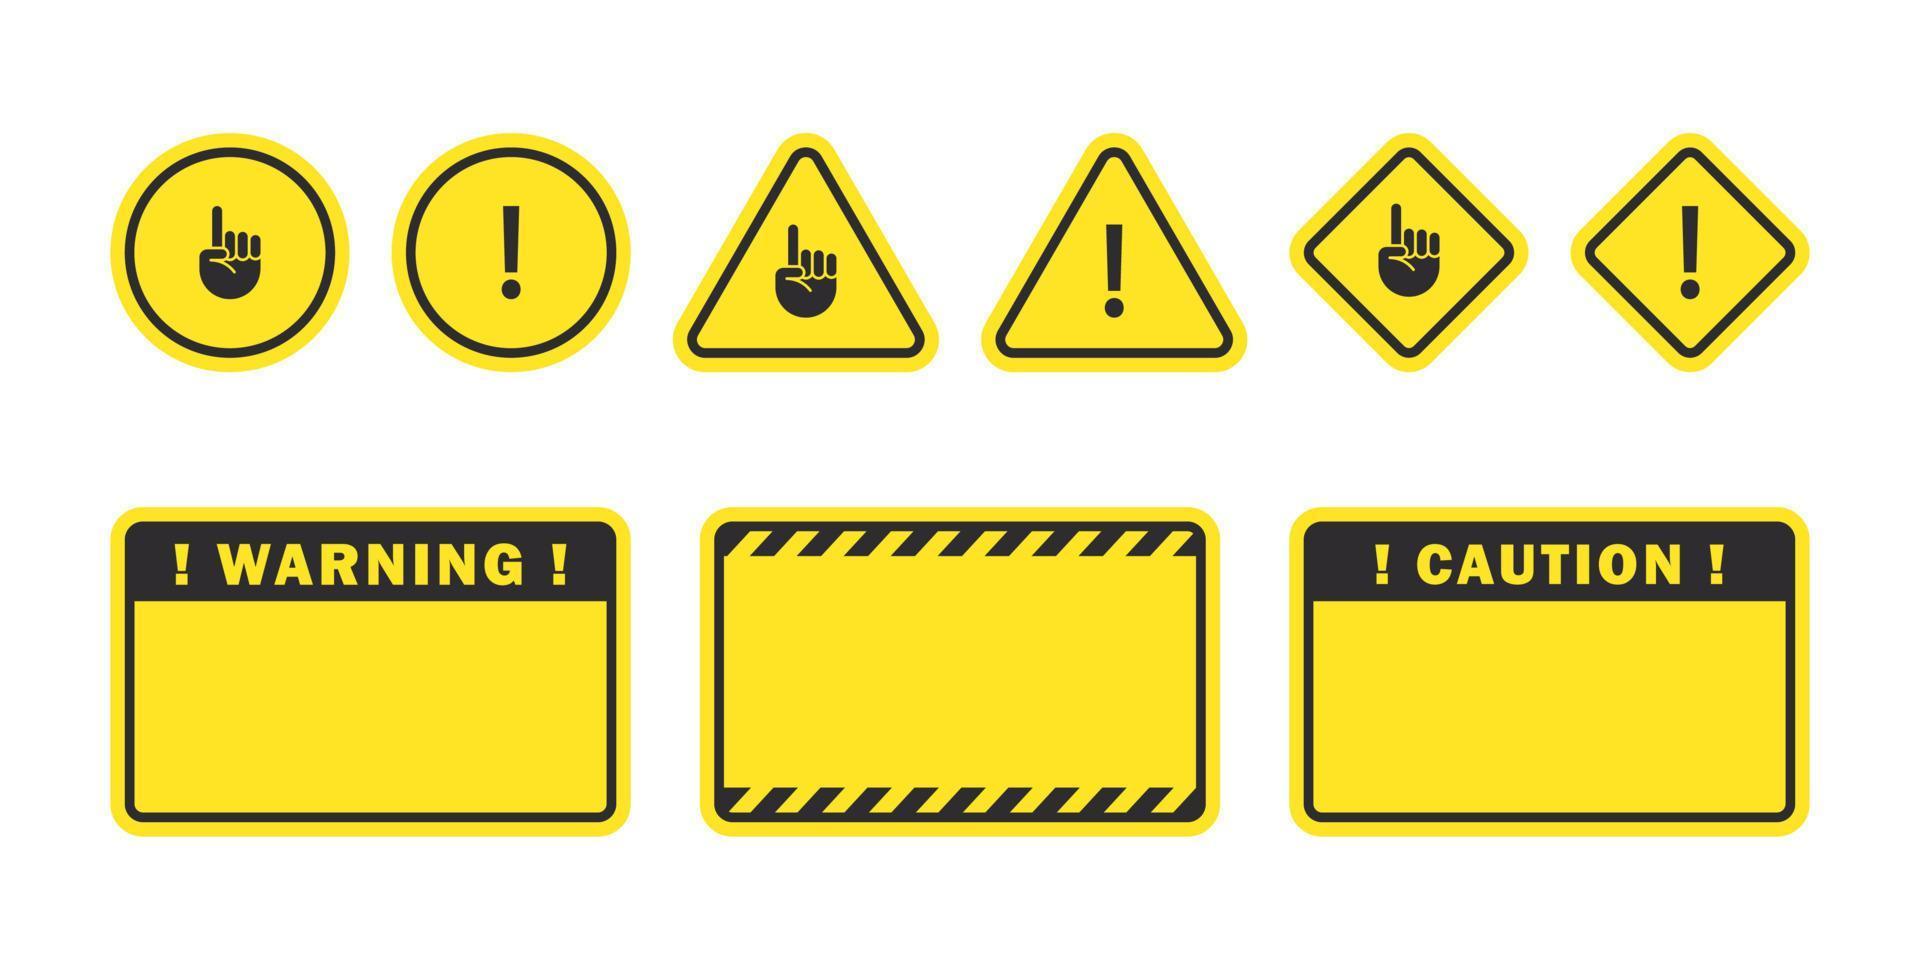 advertencia señales. precaución señales. símbolos peligro y advertencia escudos vector escalable gráficos